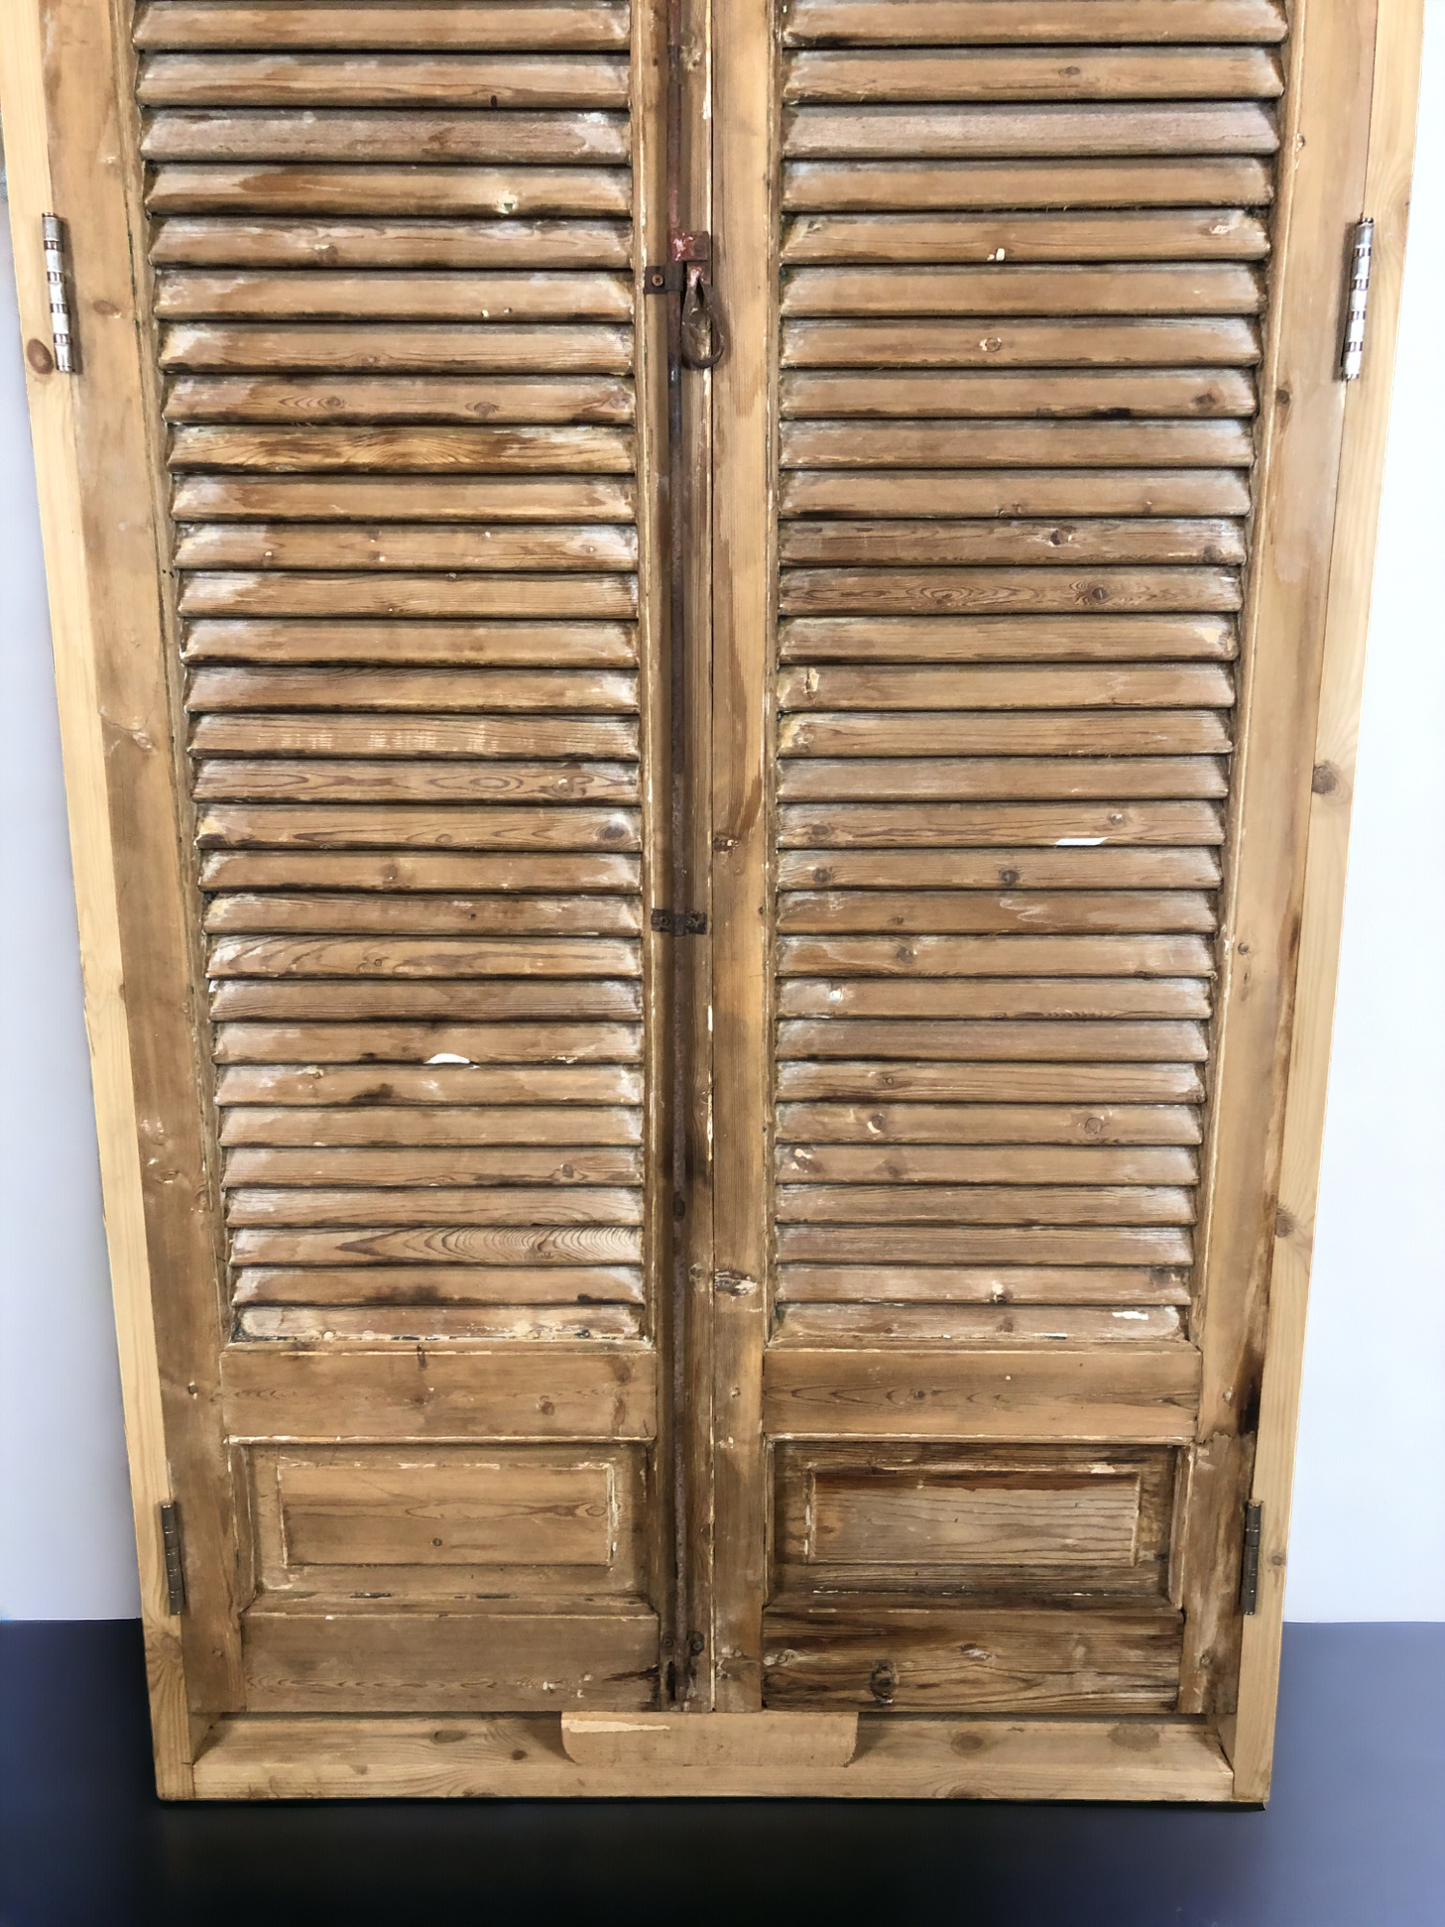 Antique Encased Shutter French Double Doors (37x90) European Panel Door Jamb S19